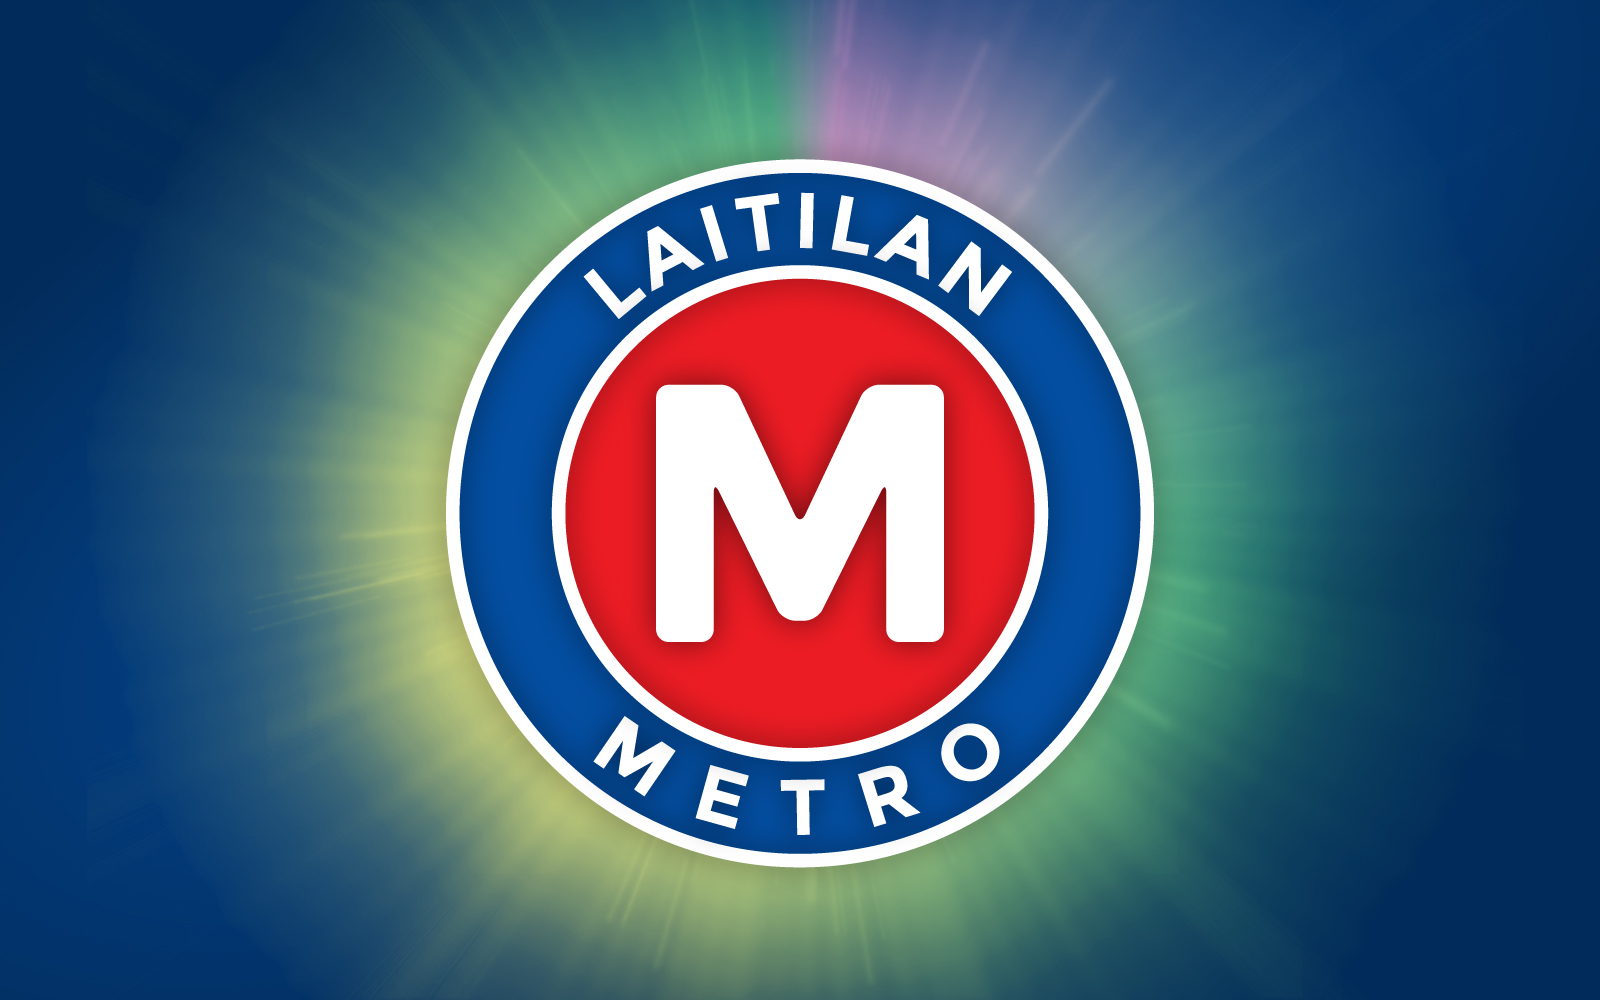 Laitilan Metro logo